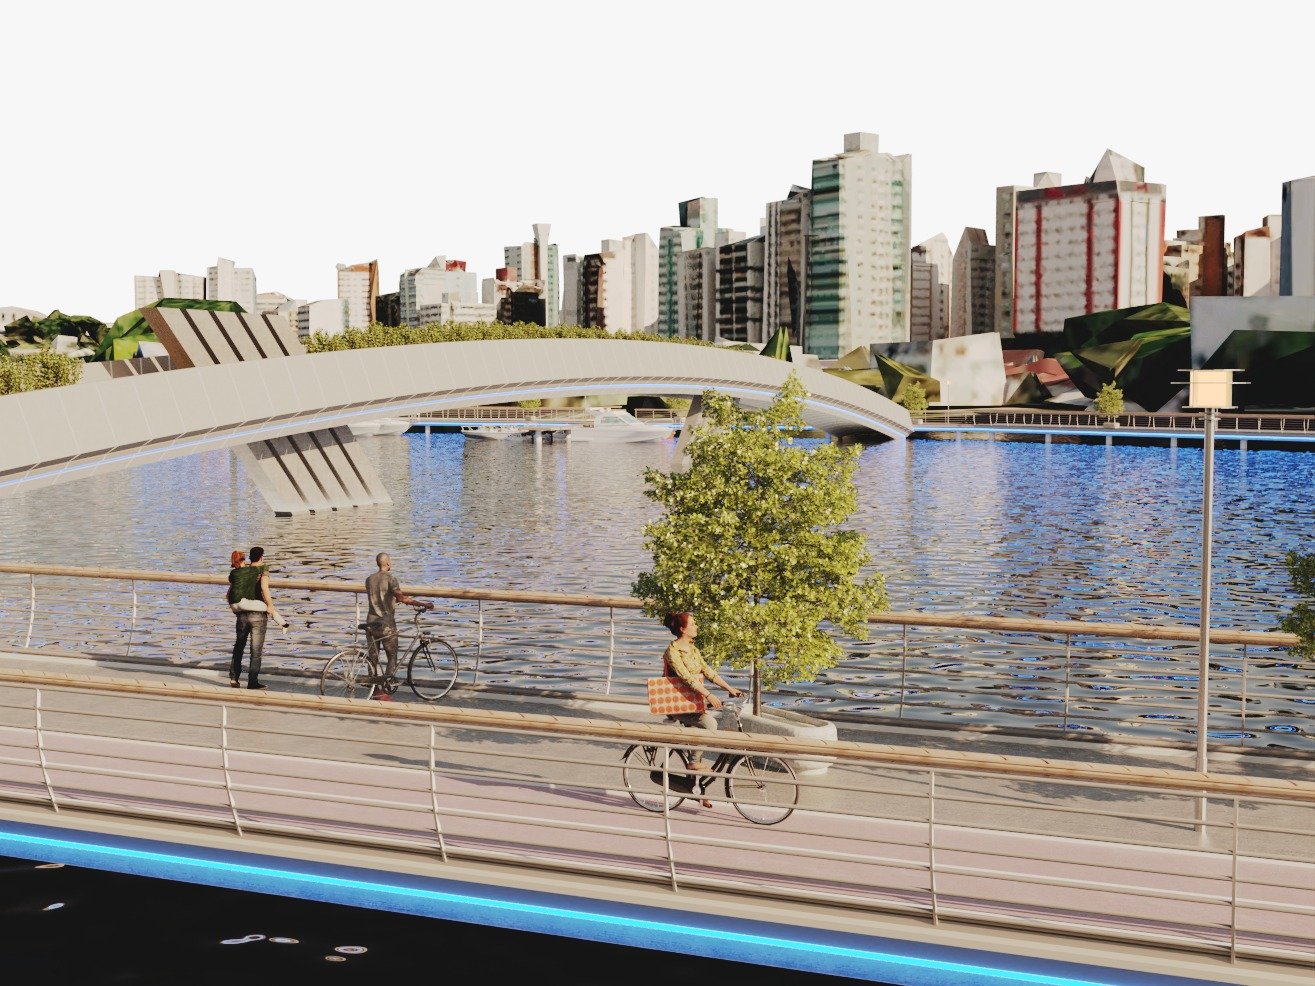 Projeto de reurbanização, apresentado pela Prefeitura de Vitória na noite desta terça-feira (19), prevê ainda a dragagem para aumentar em 1,5 metro a profundidade do canal